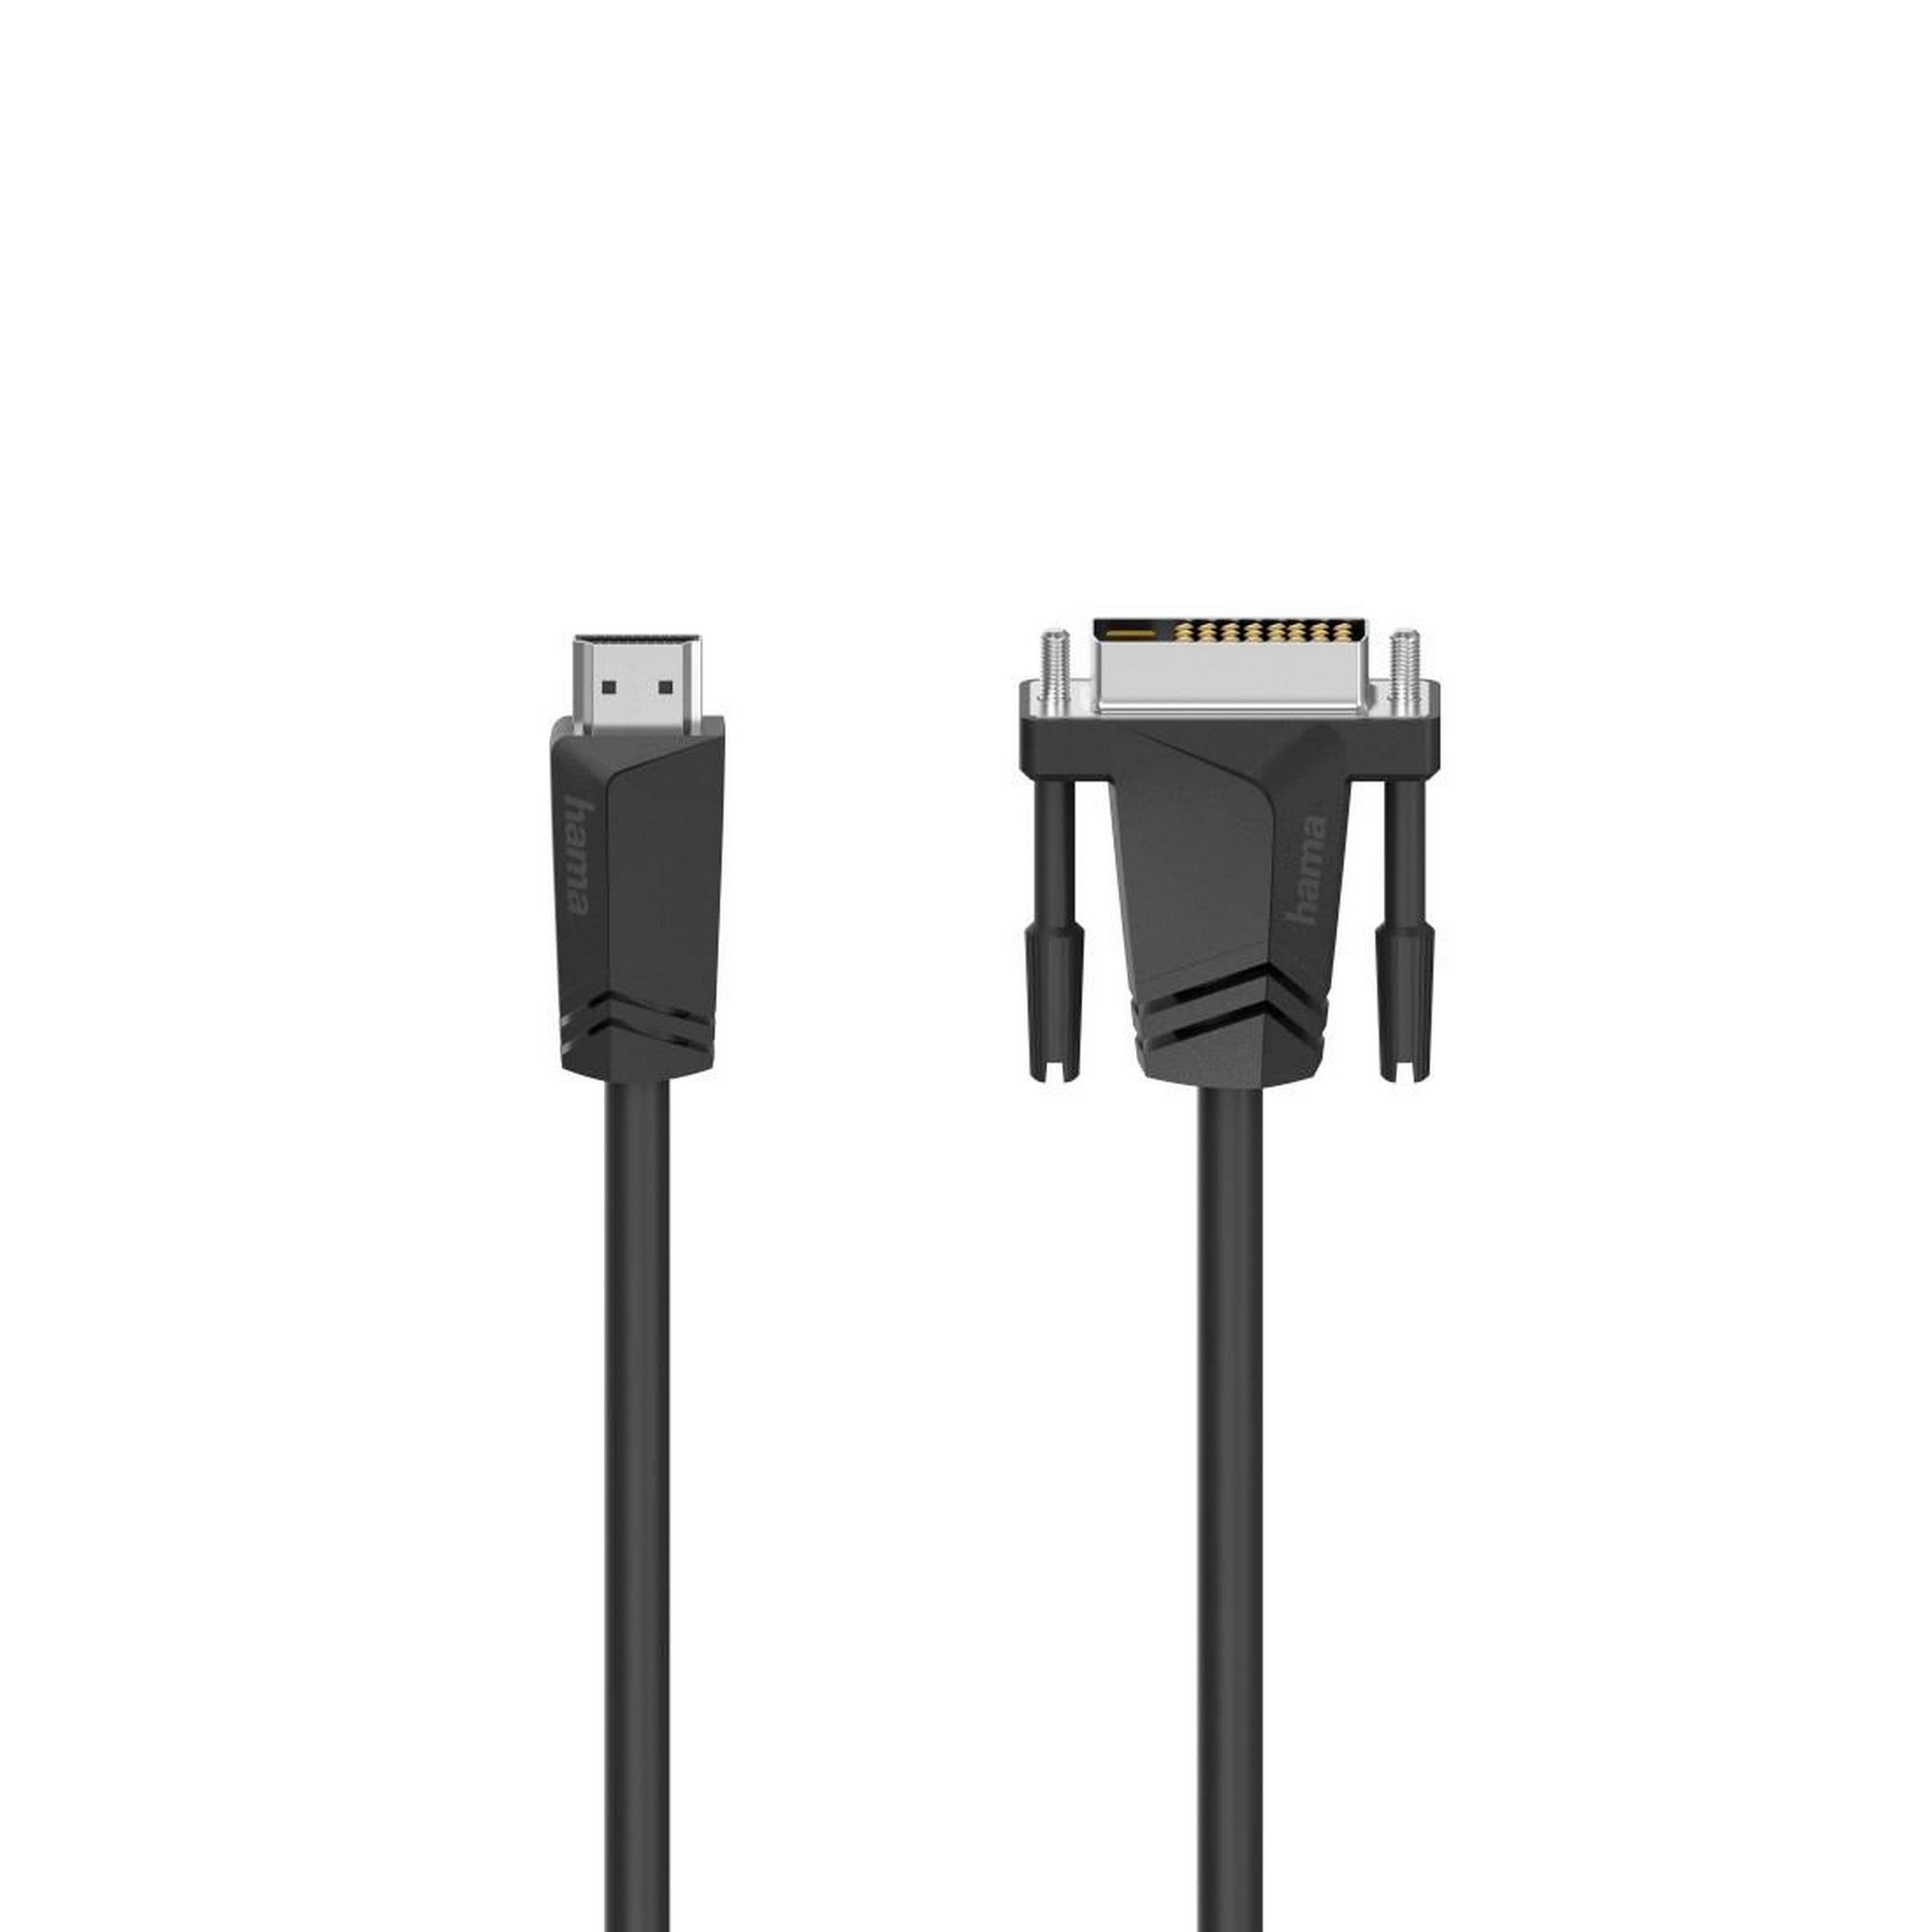 Verbindungskabel HDMI-Stecker mit DVI-D-Stecker 1,5 m + product picture